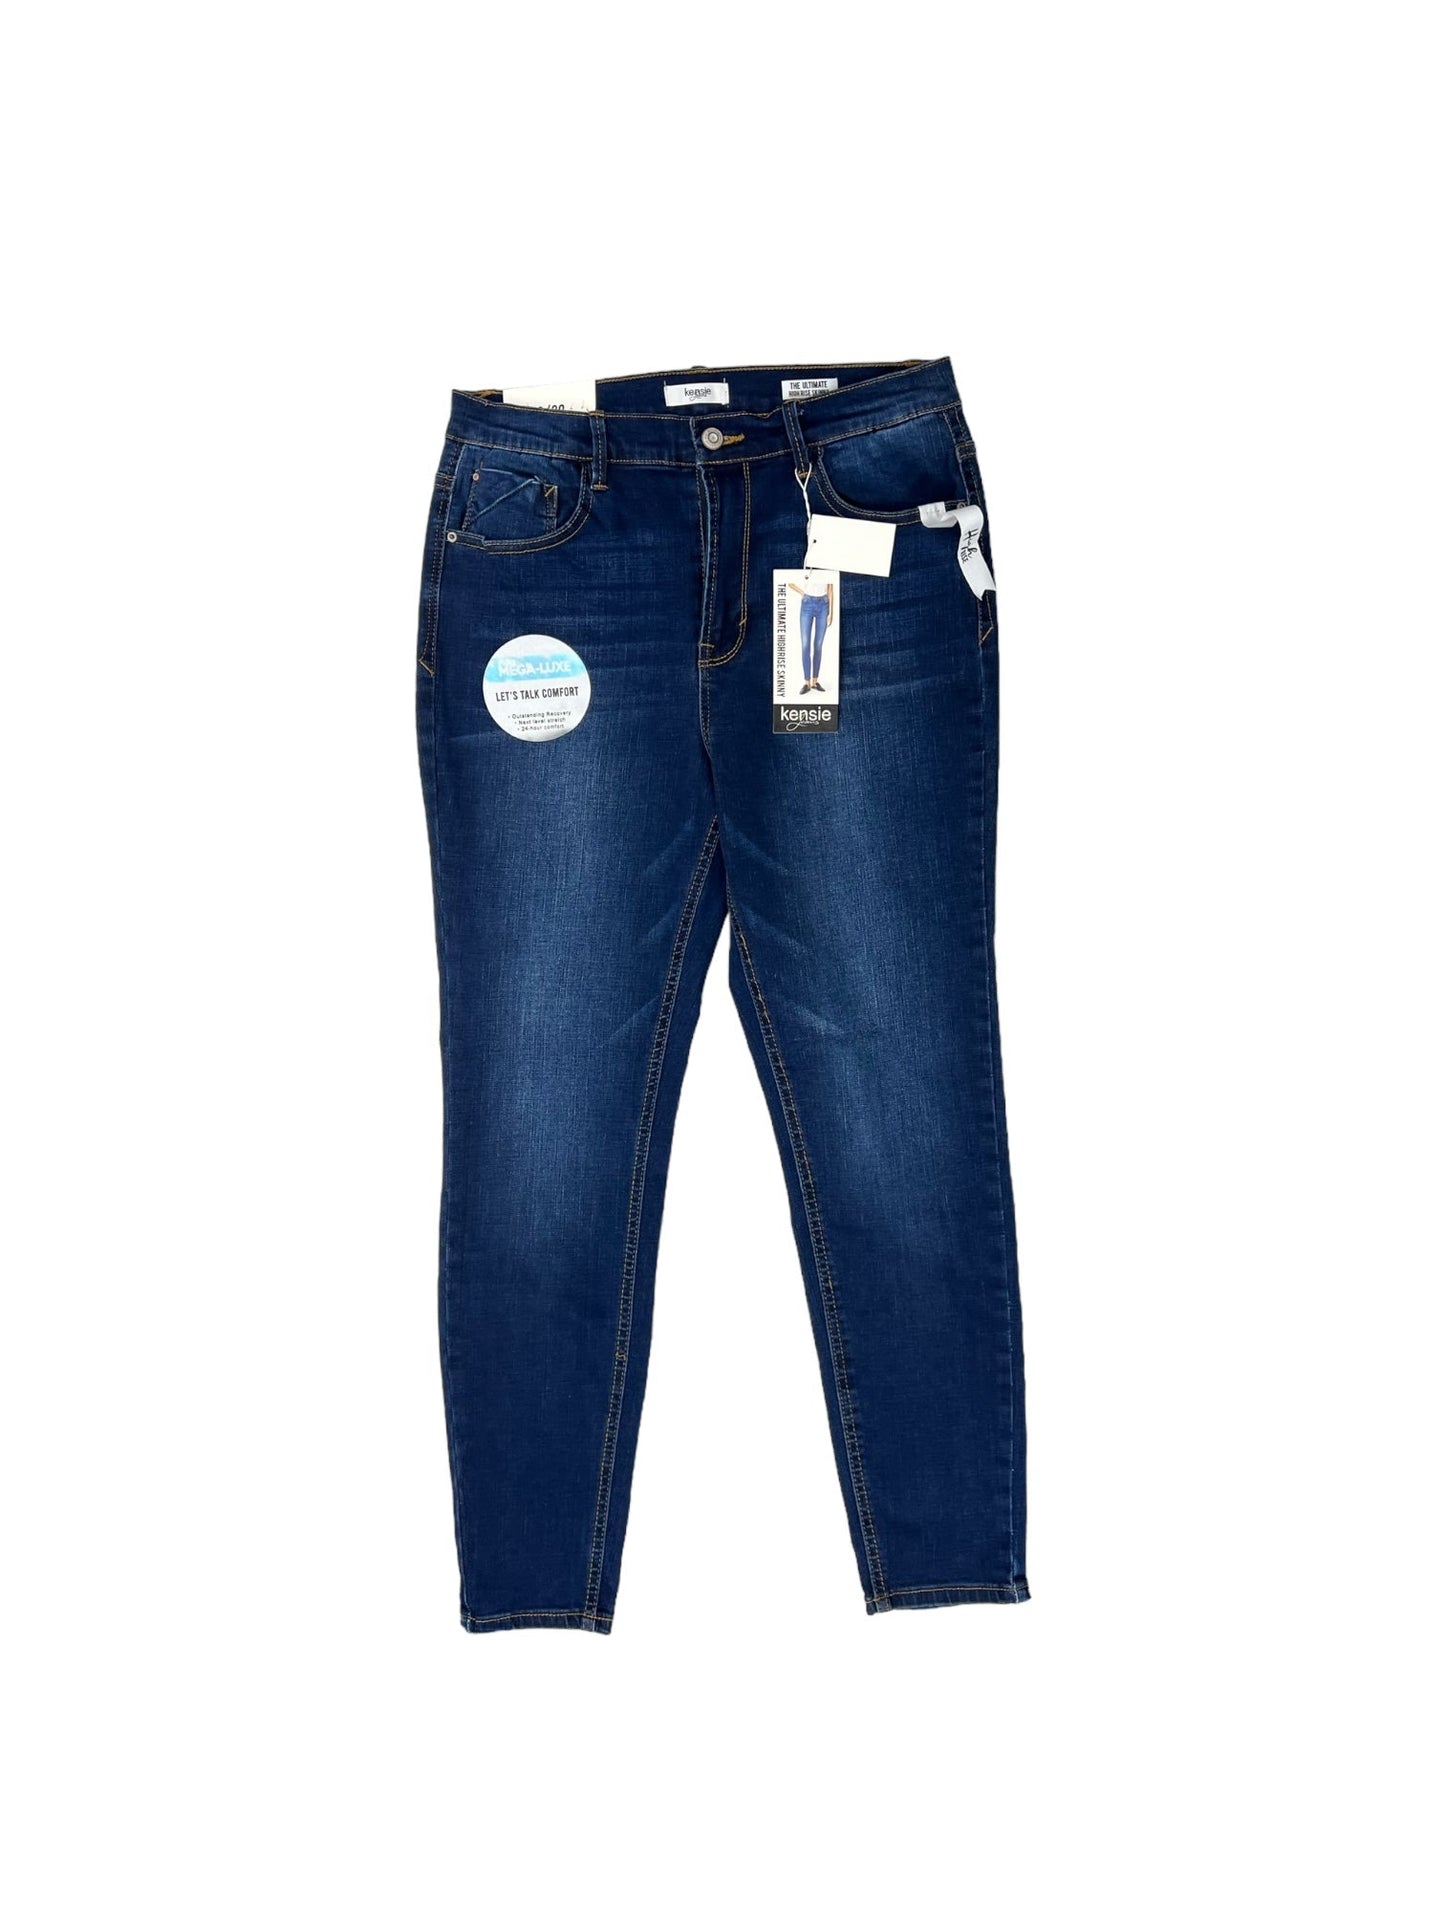 Blue Denim Jeans Skinny Kensie, Size 10